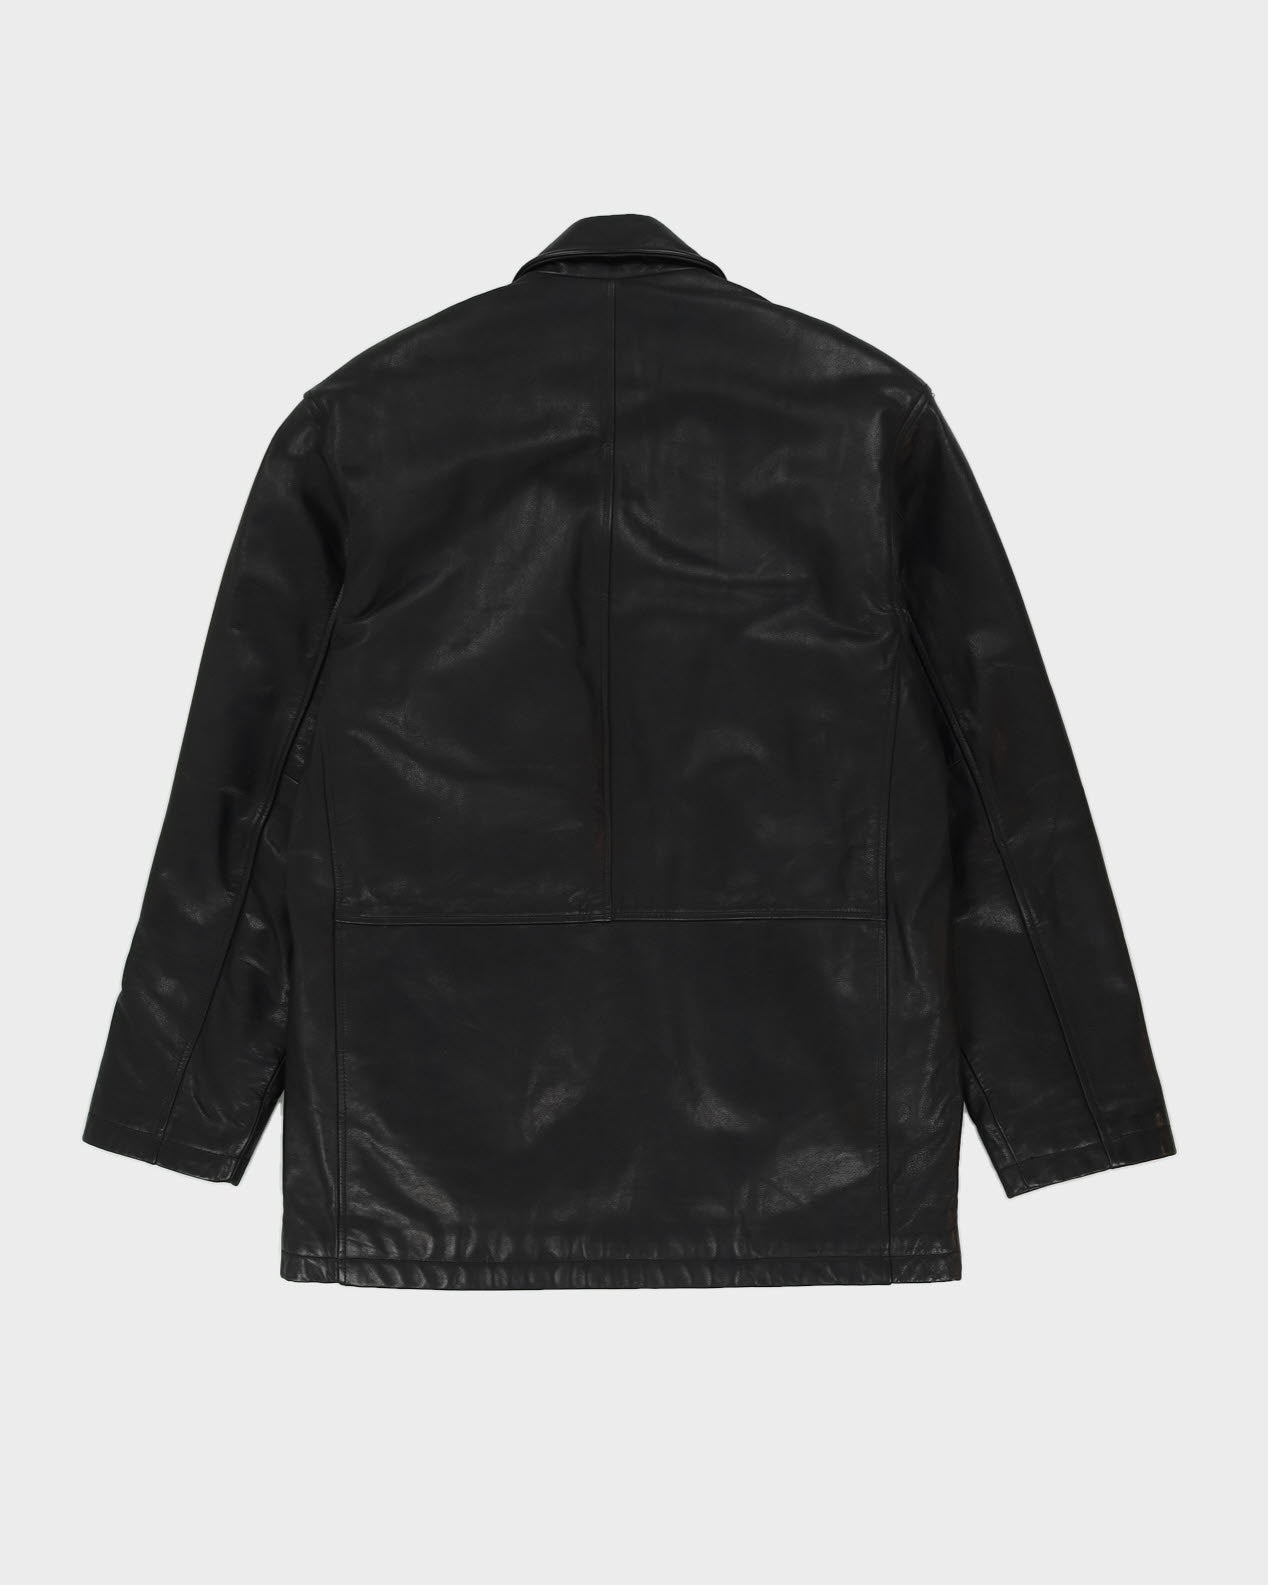 Harry Rosen Black Fleece Lined Leather Jacket - M